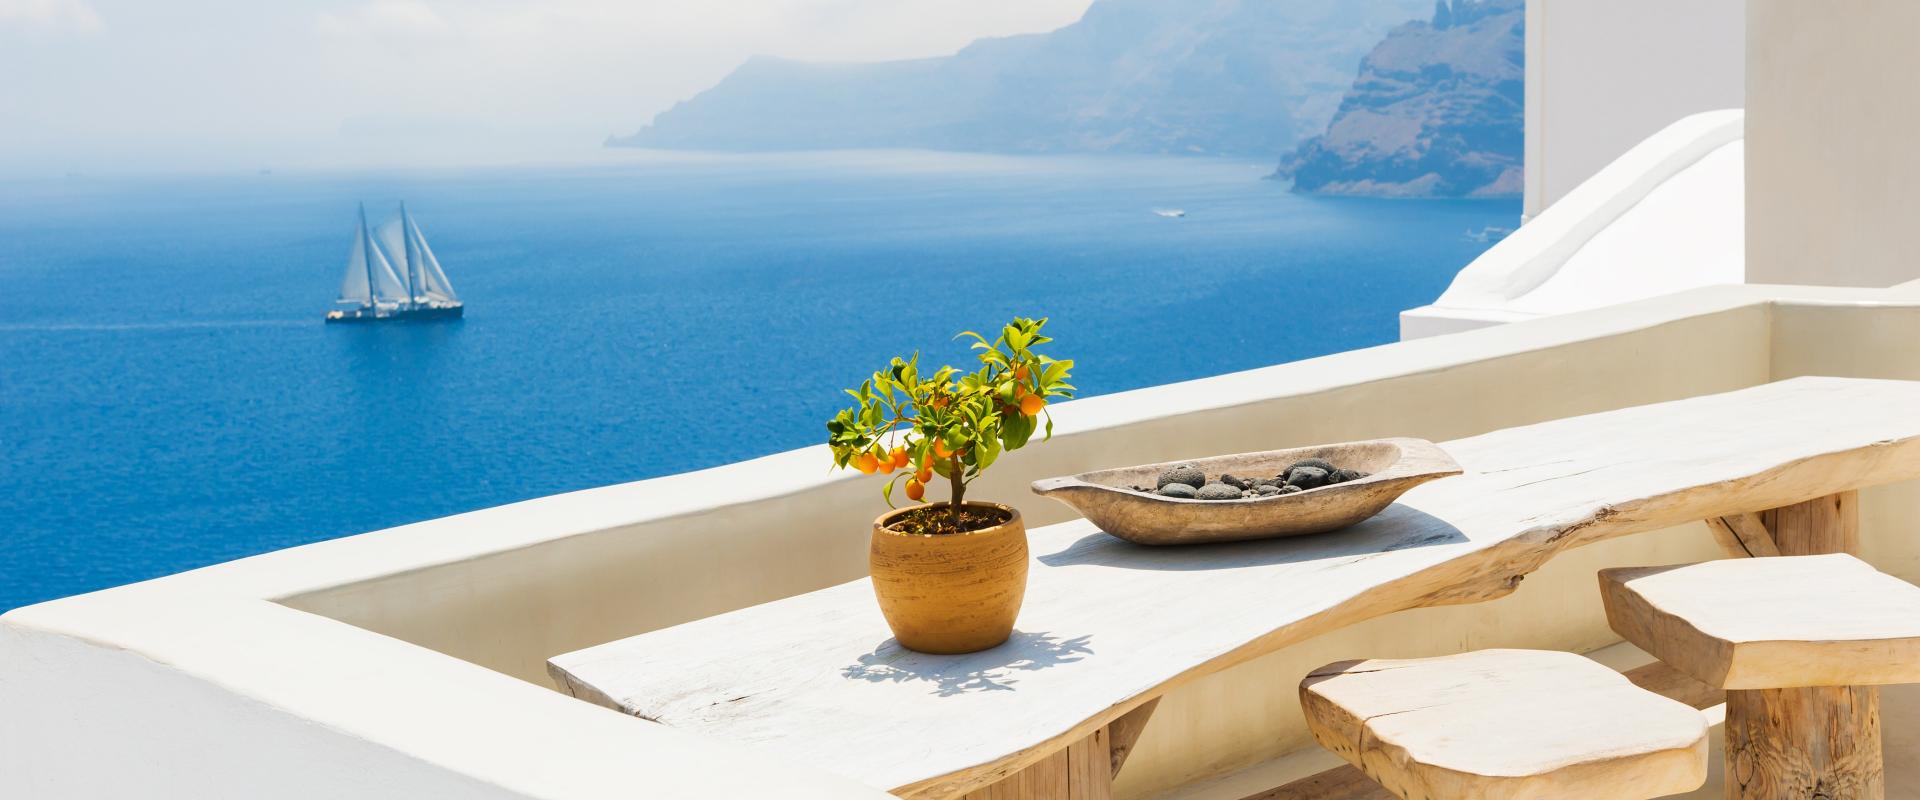 Table en terrasse d'une île grecque au bord de mer avec des produits grecs